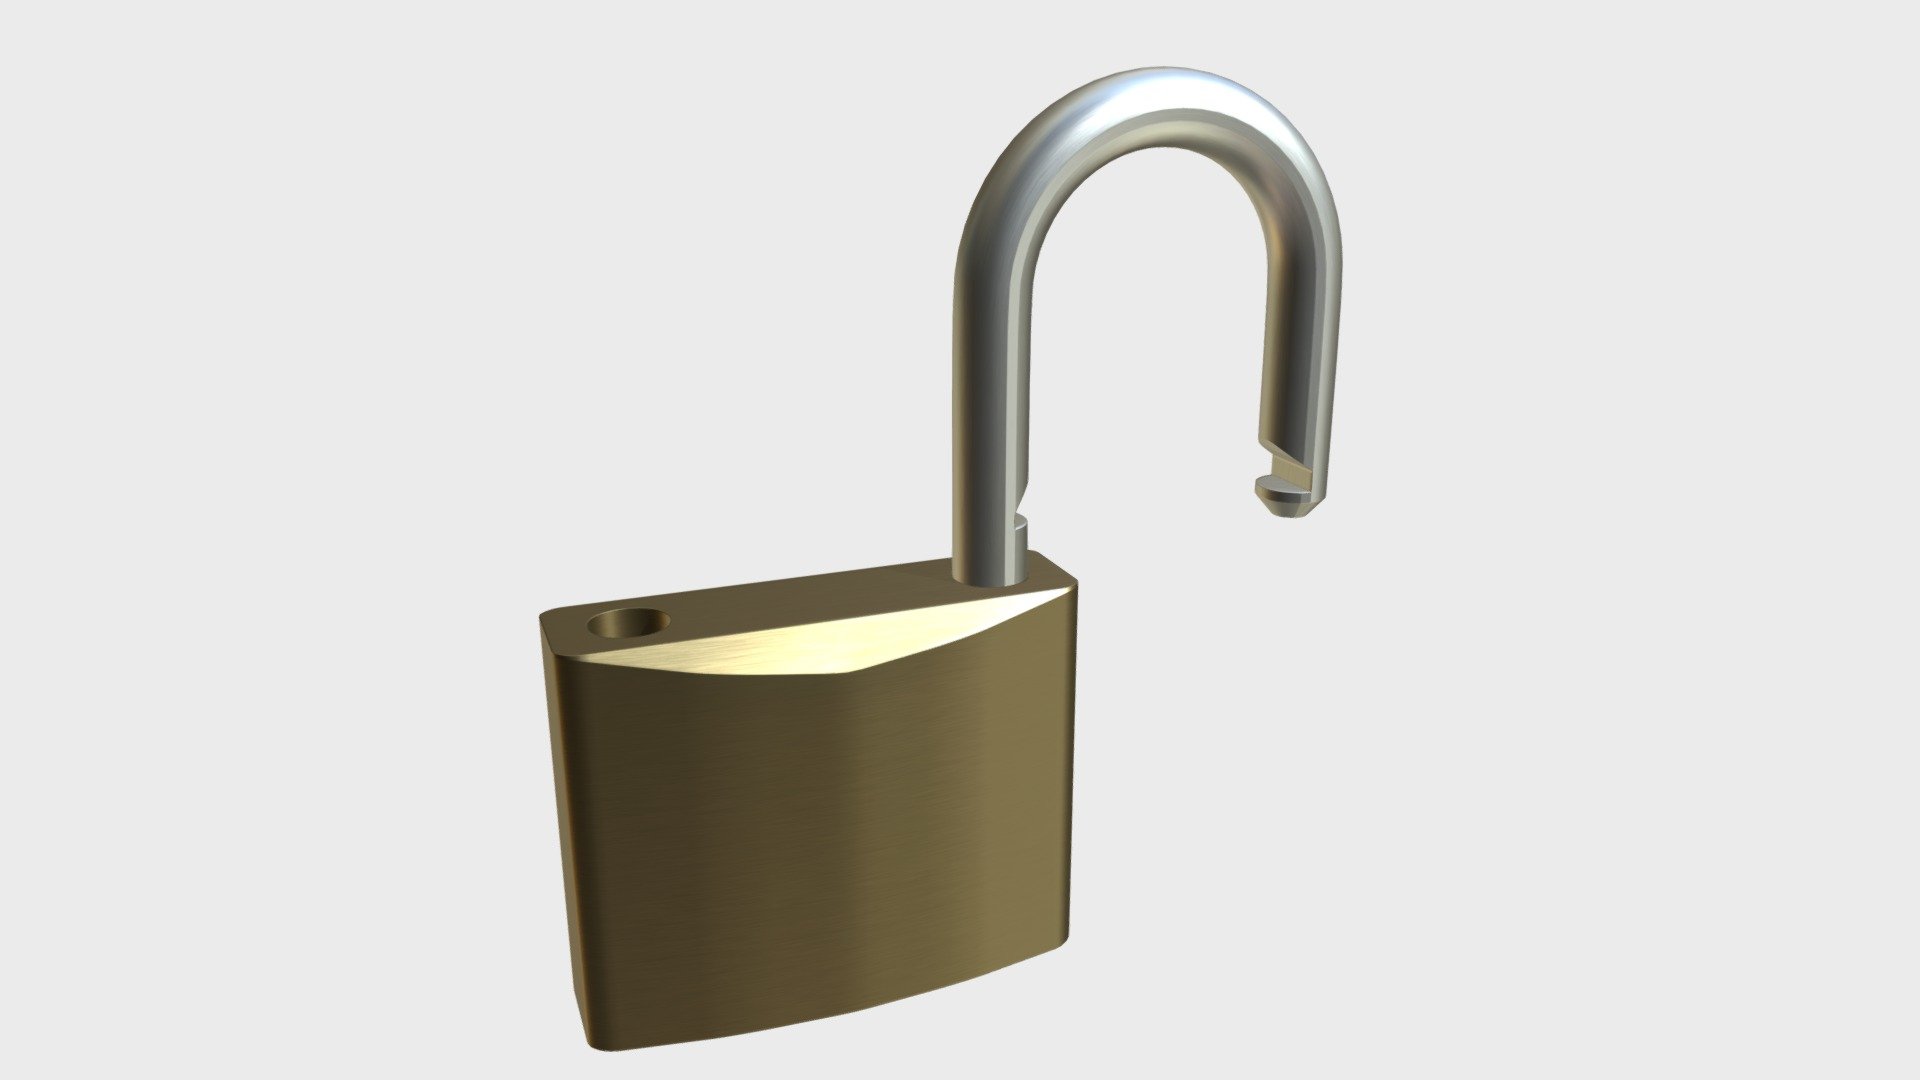 Openable padlock